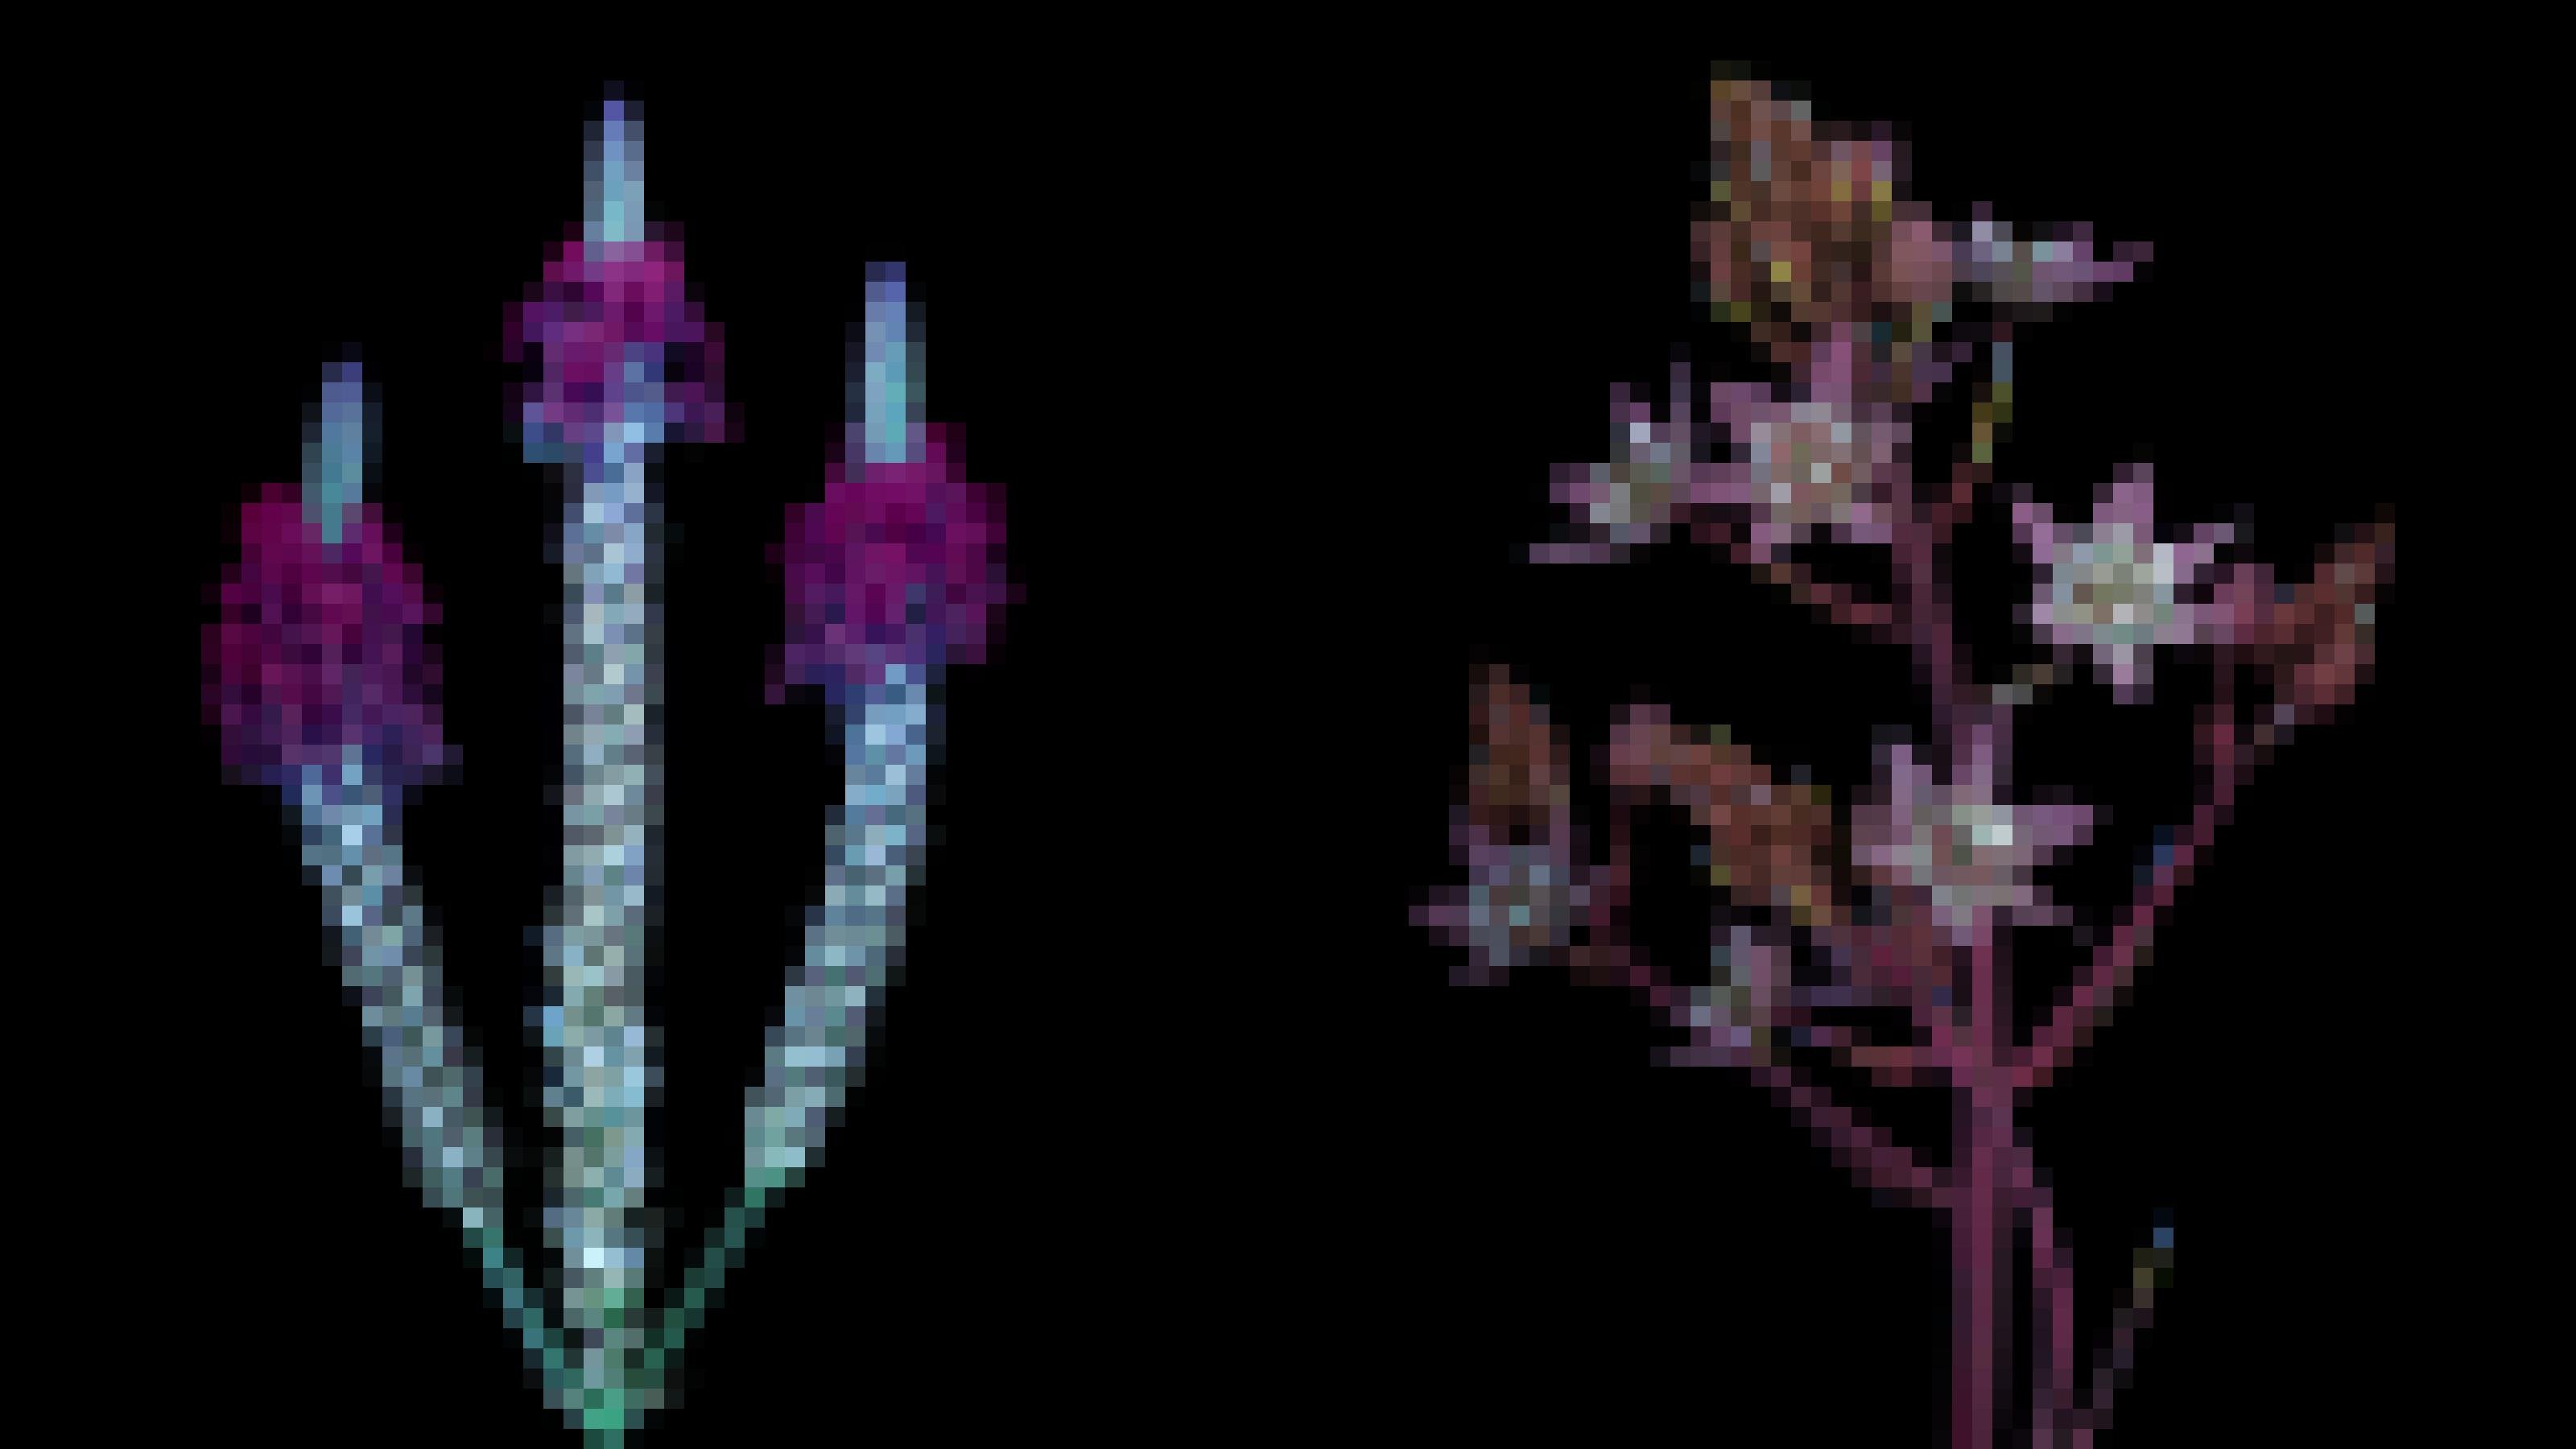 Zwei Blütenstände, links mit violetten Blüten, rechts leuchten im Inneren der zartrosa Blüten helle Punkte.